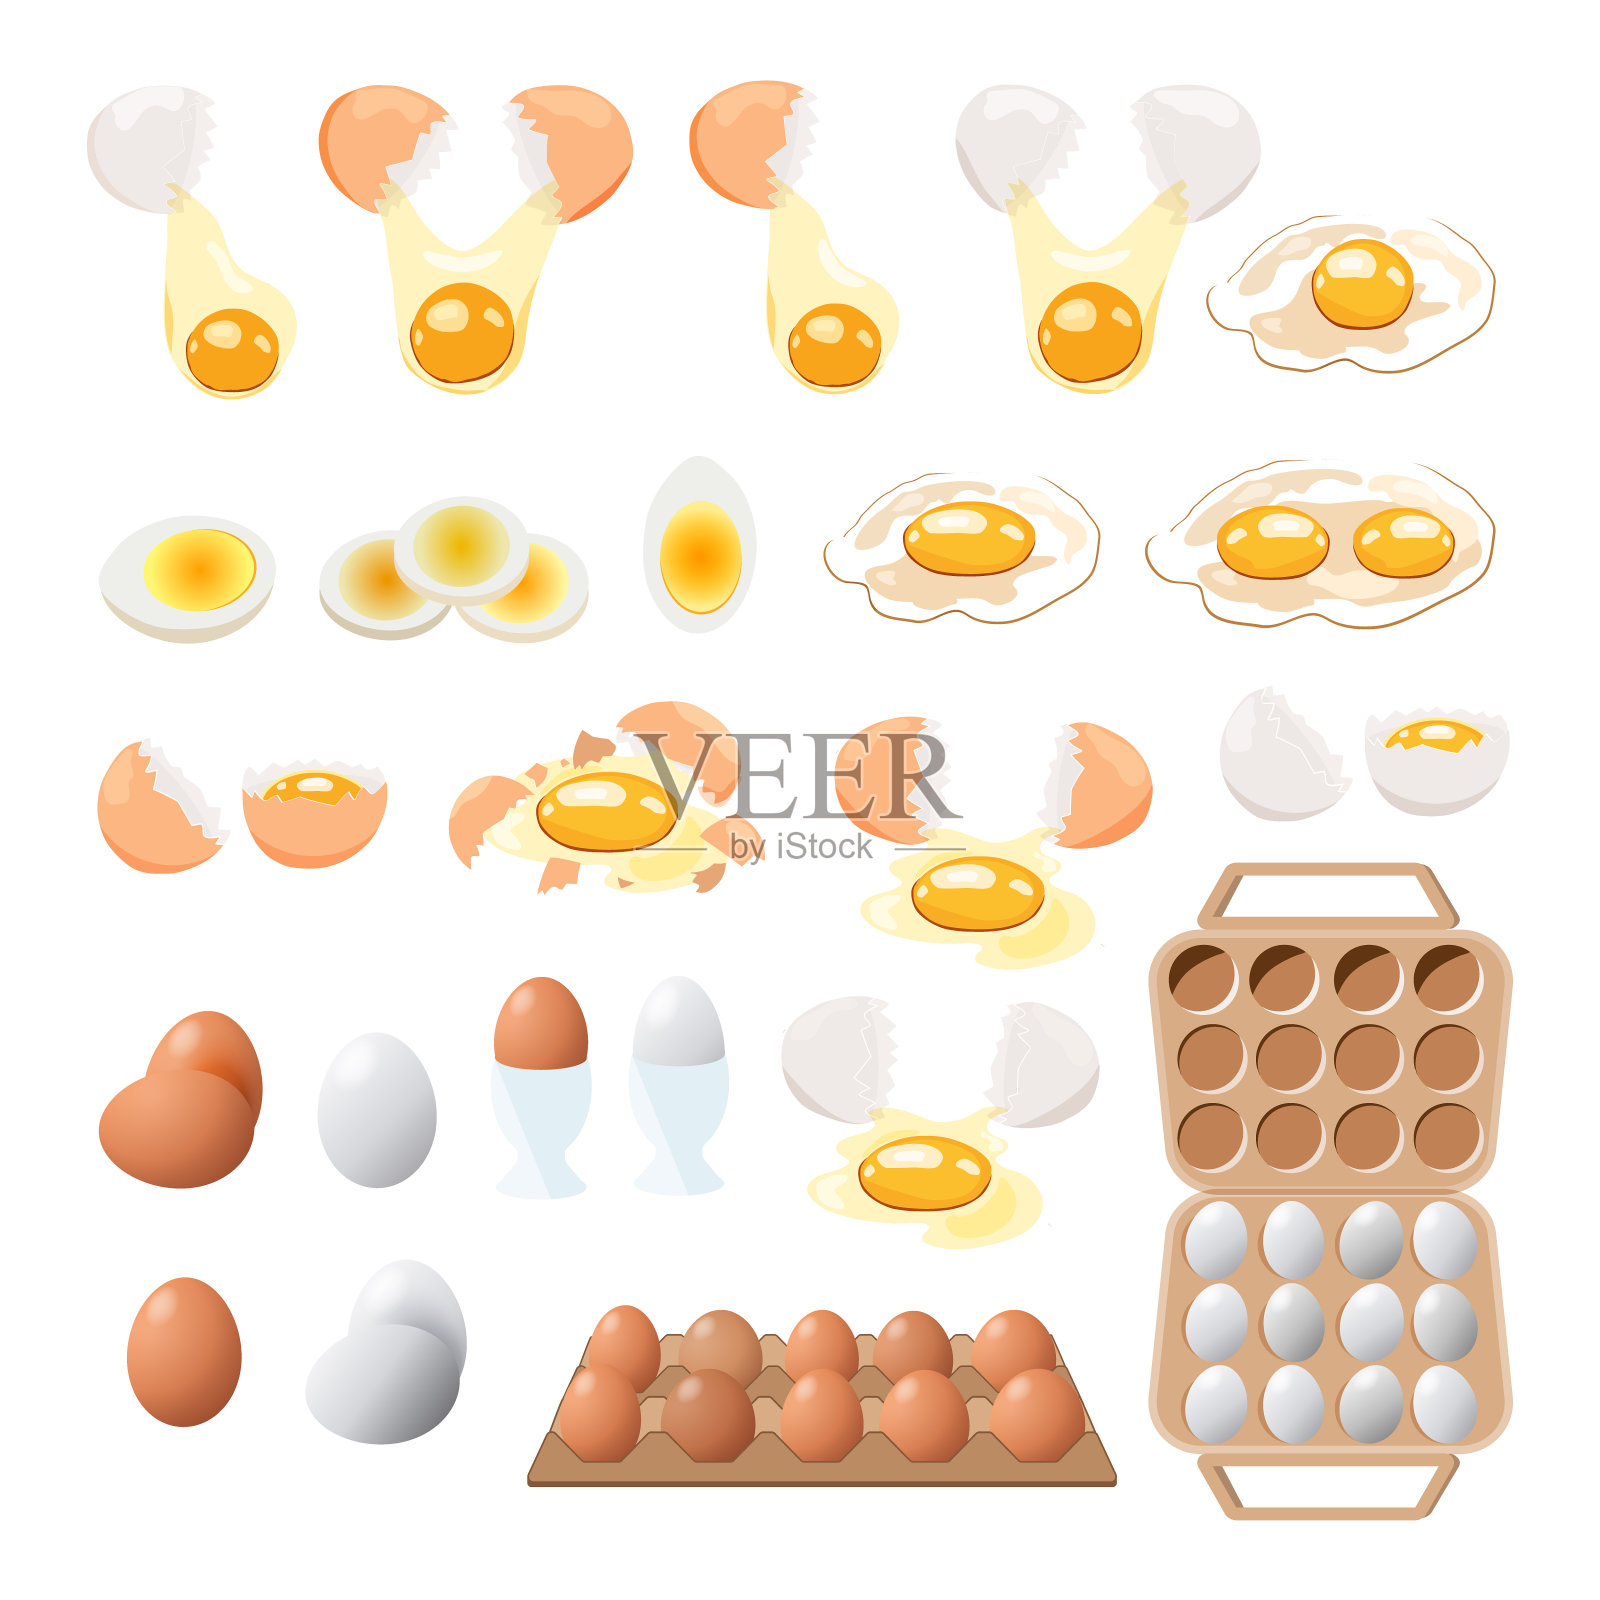 煎蛋。快餐。做午餐、晚餐或早餐。自然的产品。煮熟的煎蛋卷。插画图片素材